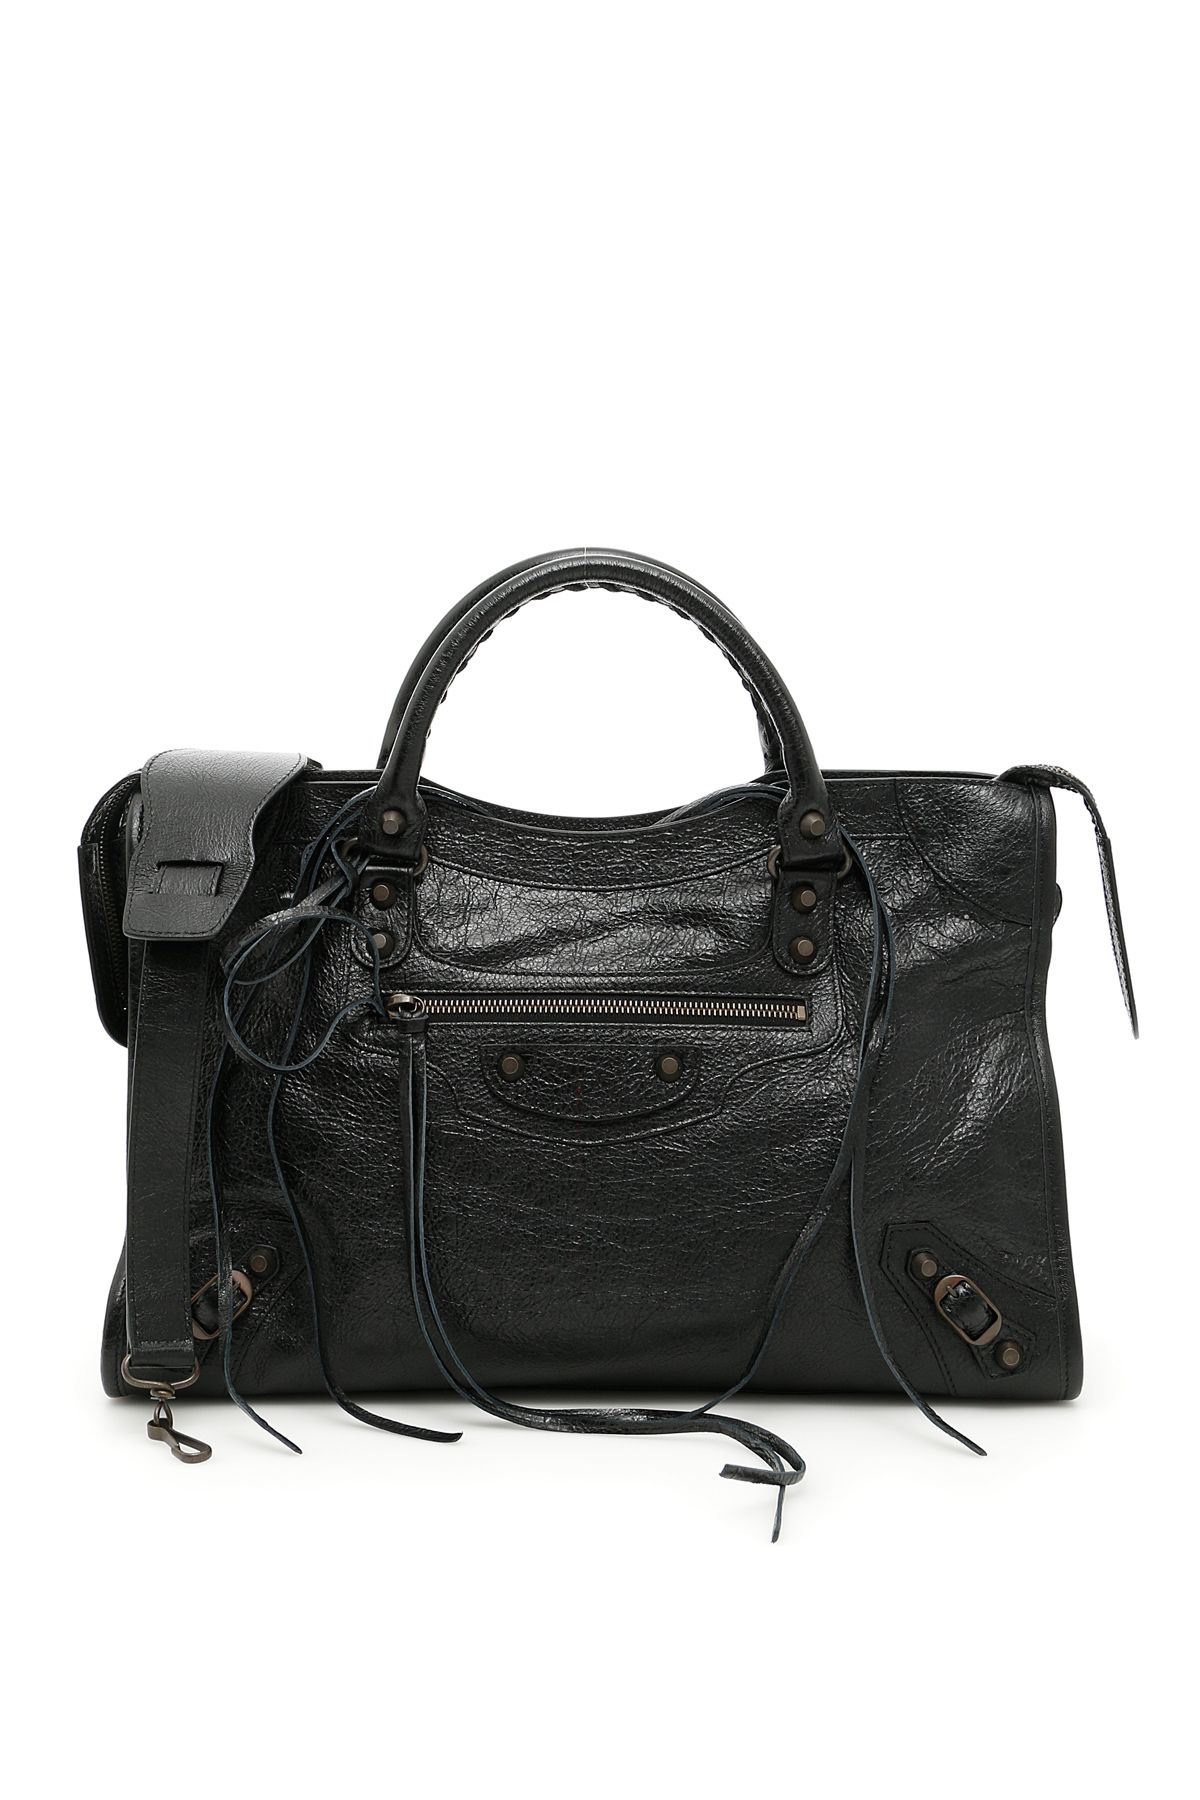 Balenciaga - Classic City Bag - 115748 D94JT 1000, Women's Bags | Italist